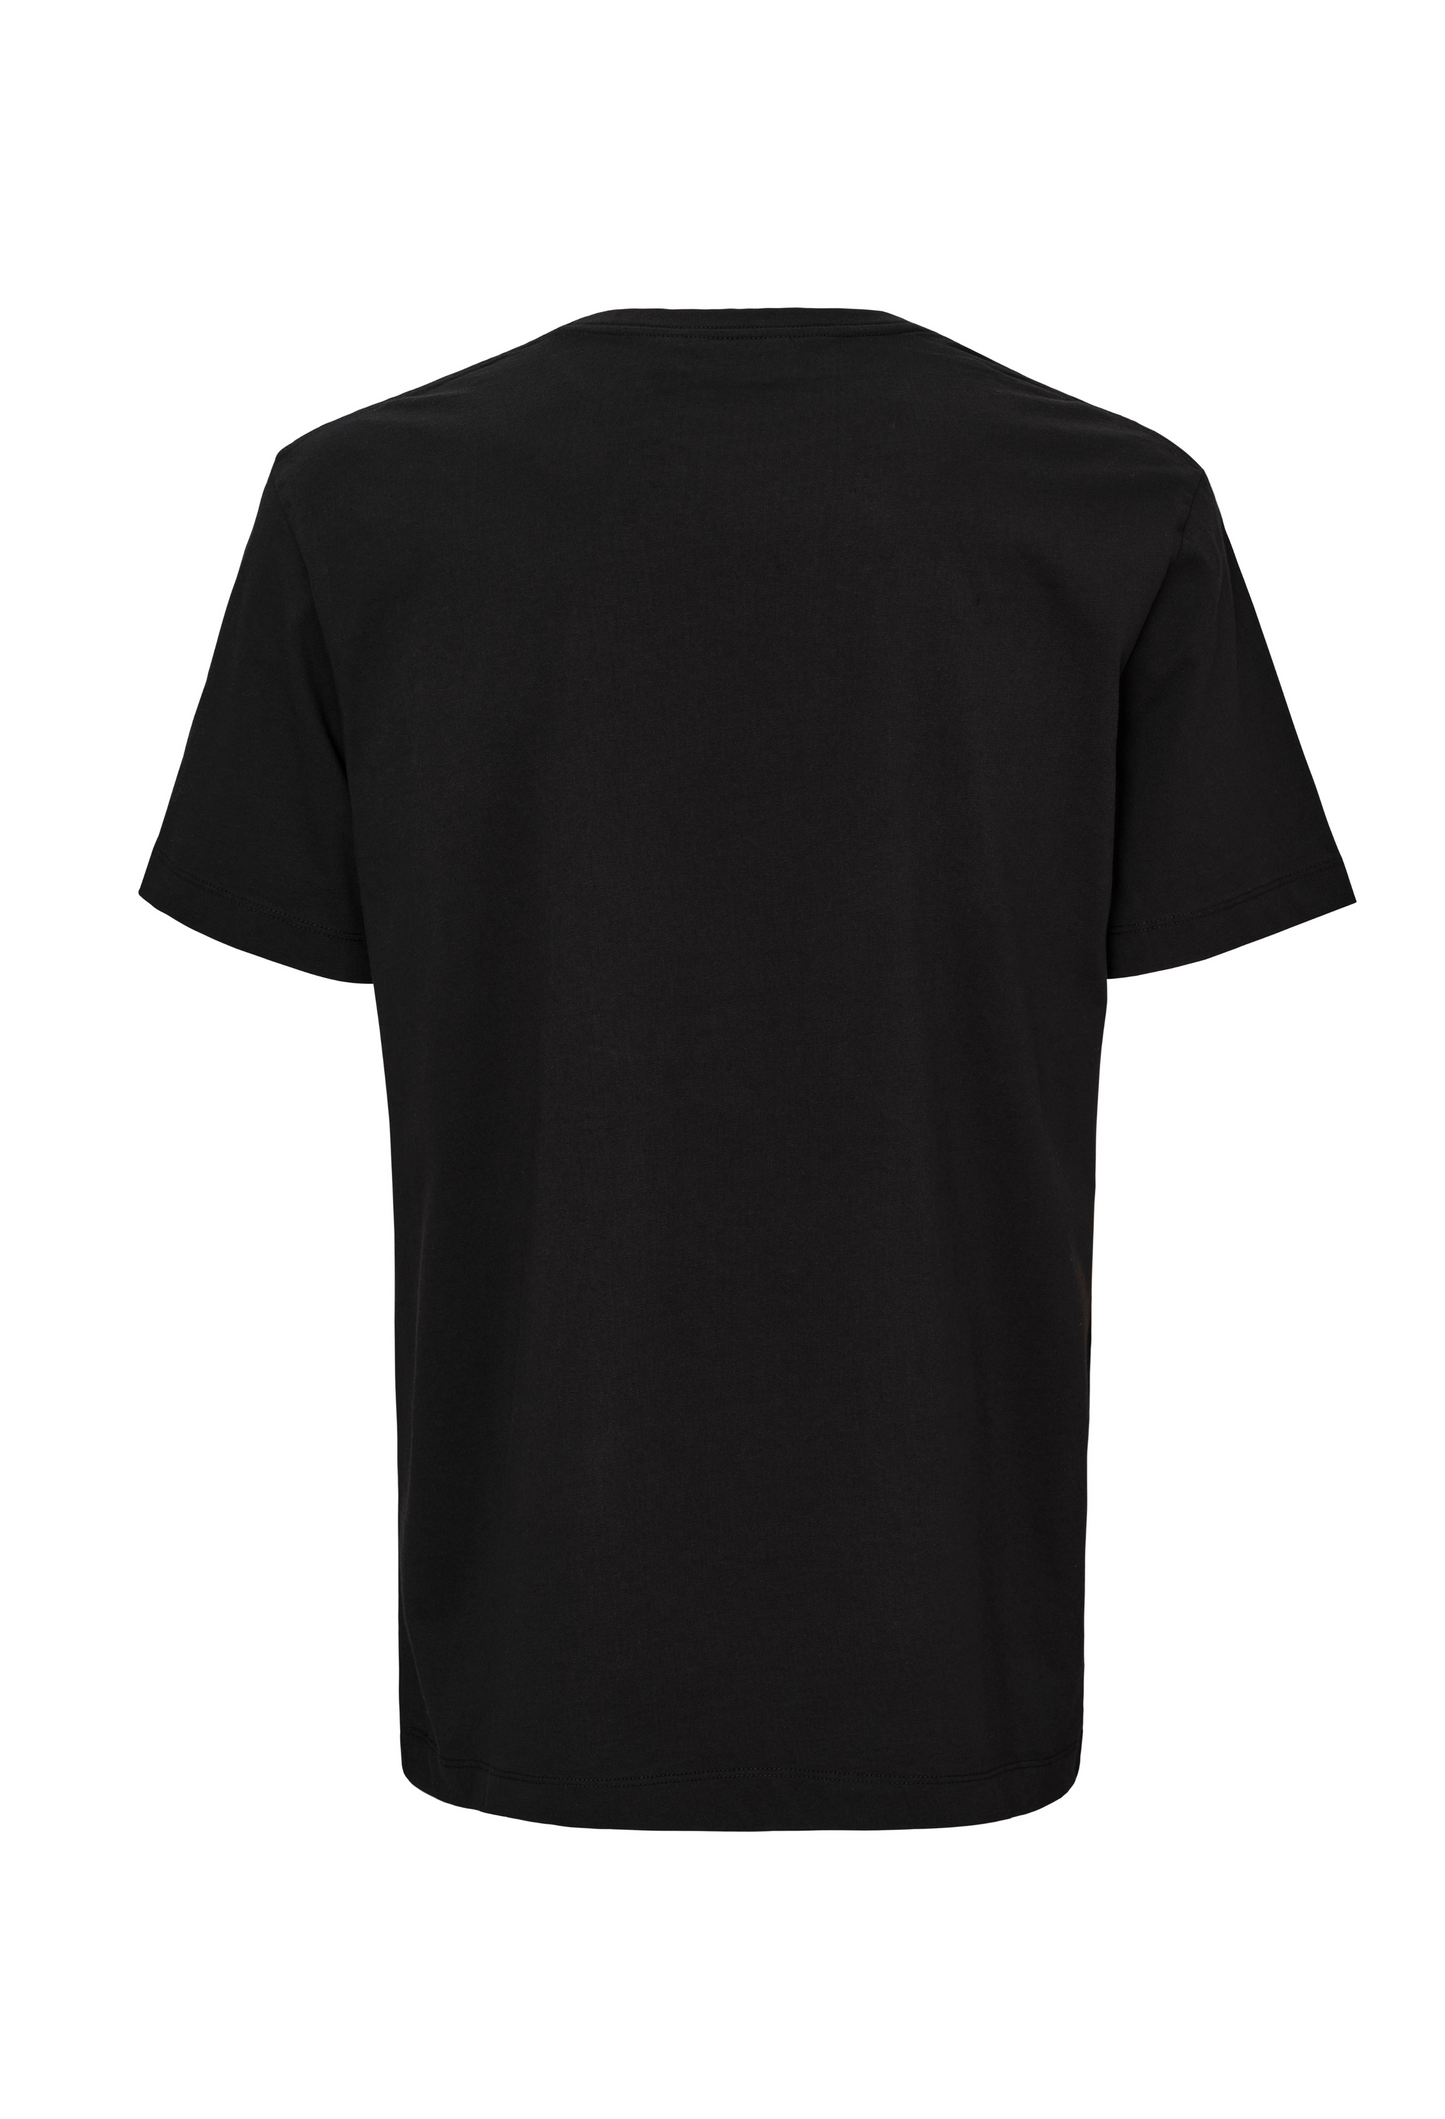 Matte Print T-Shirt - Black